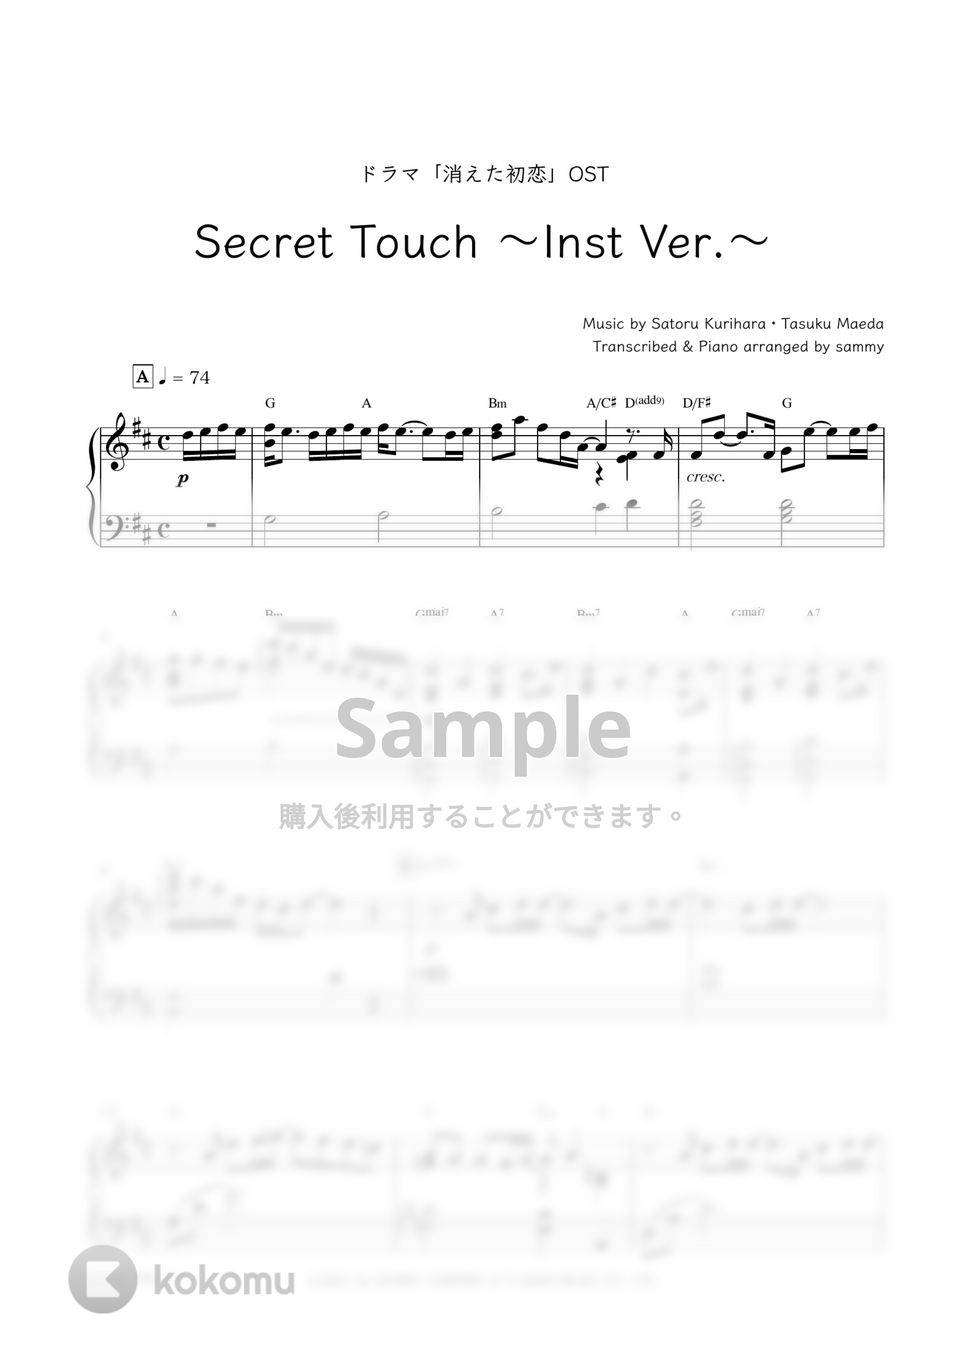 ドラマ『消えた初恋』OST - Secret Touch 〜Inst Ver.〜 (SnowMan) by sammy